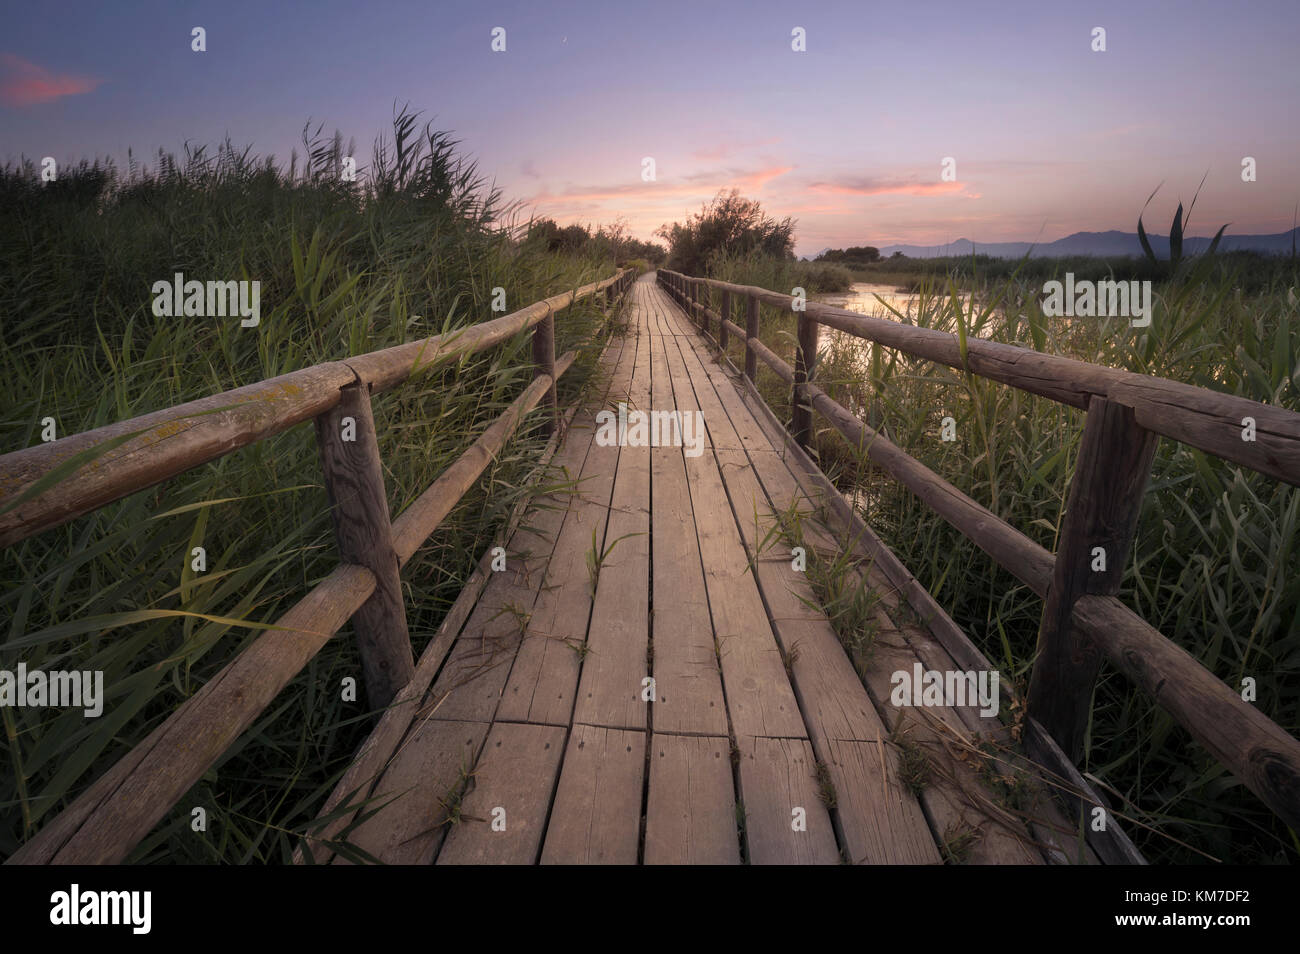 Arte della fotografia di un percorso di legno al tramonto in una palude nella provincia di Alicante, Spagna. Foto Stock